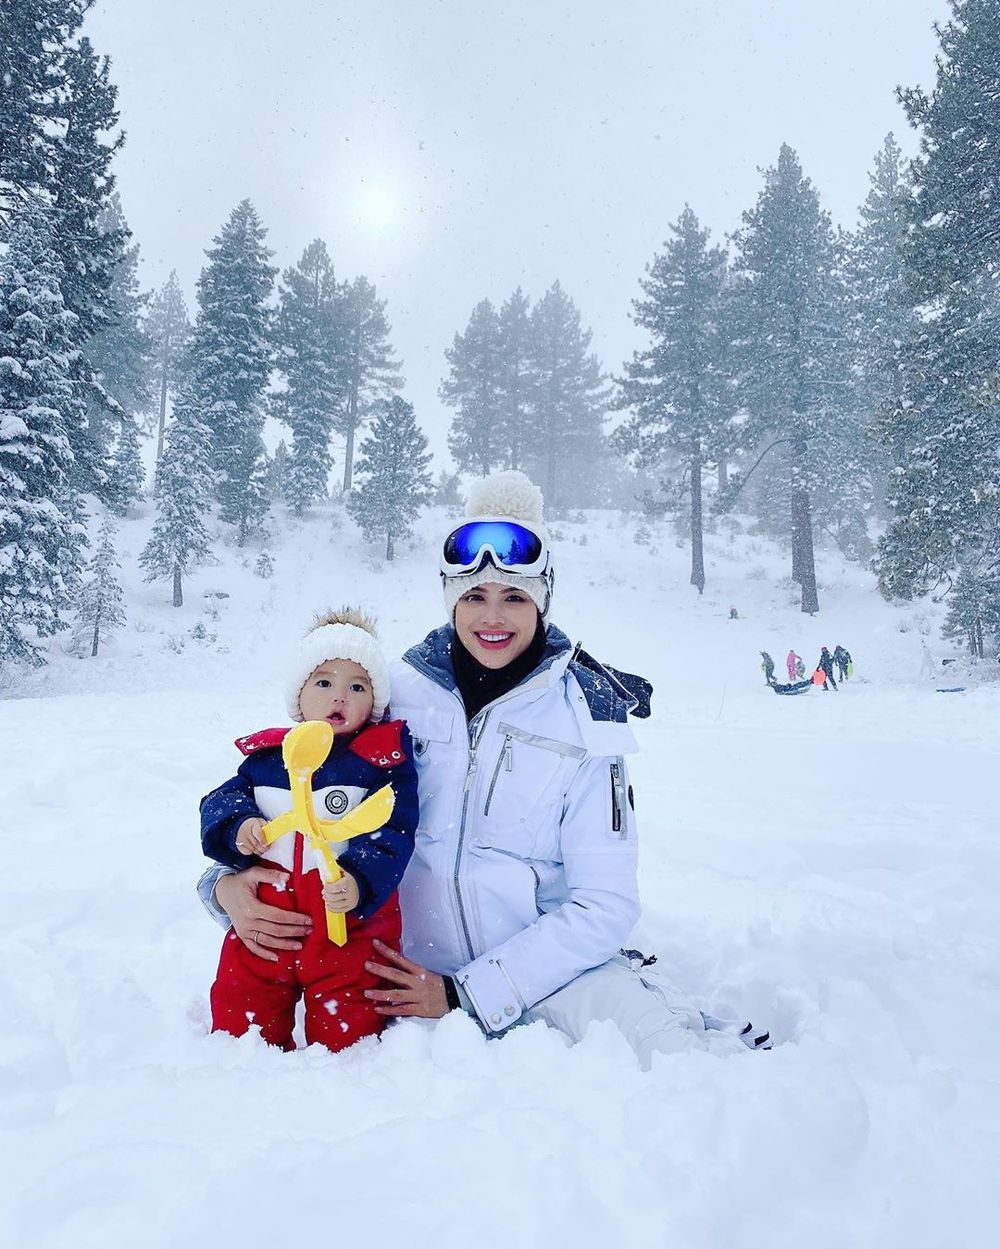  
Hai mẹ con người đẹp cùng chụp ảnh kỉ niệm khi đi chơi tuyết. (Ảnh: Instgaram nhân vật) - Tin sao Viet - Tin tuc sao Viet - Scandal sao Viet - Tin tuc cua Sao - Tin cua Sao